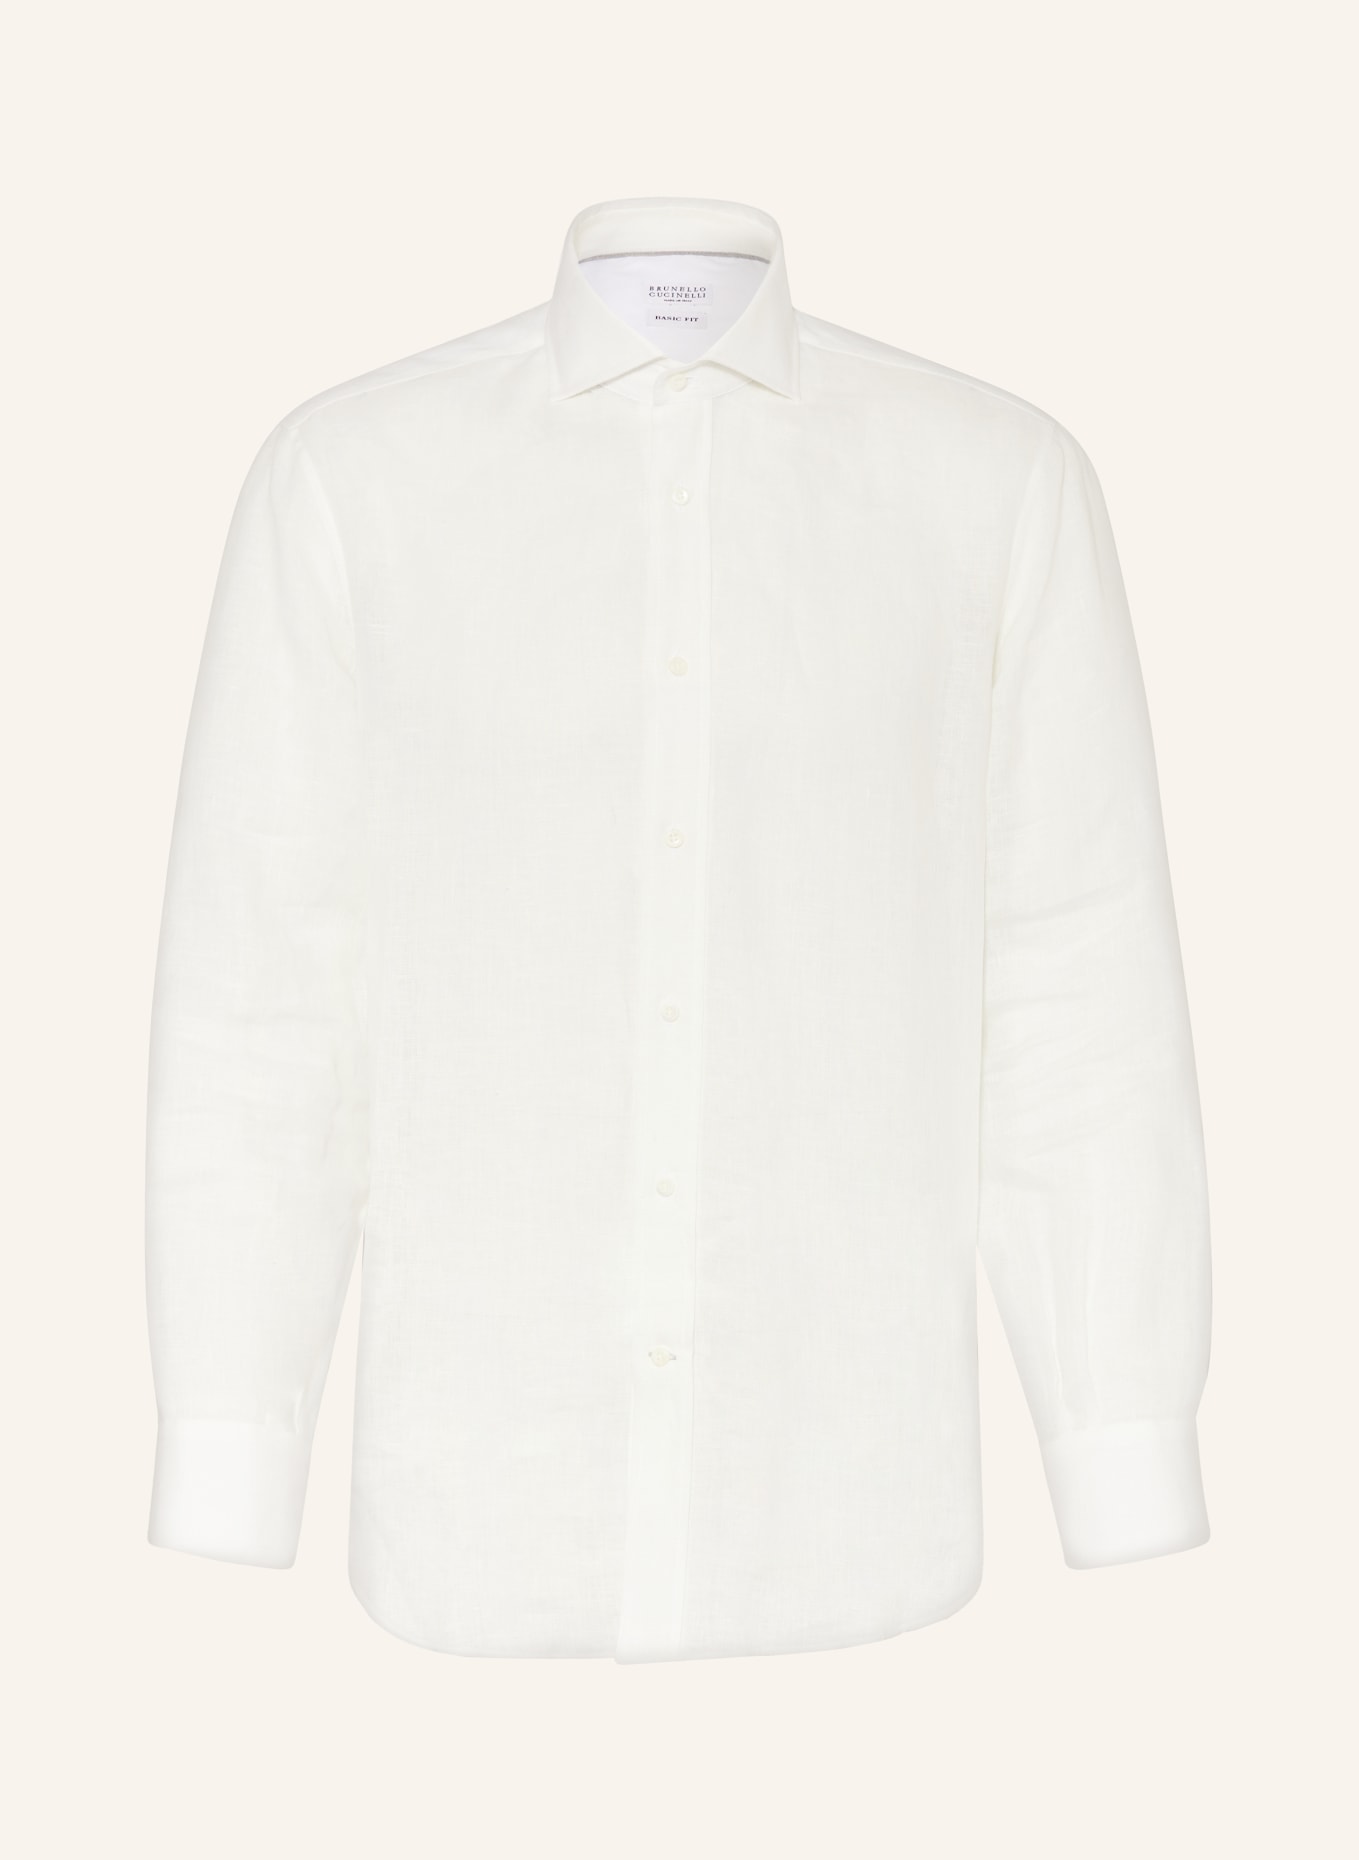 BRUNELLO CUCINELLI Leinenhemd Basic Fit, Farbe: WEISS (Bild 1)